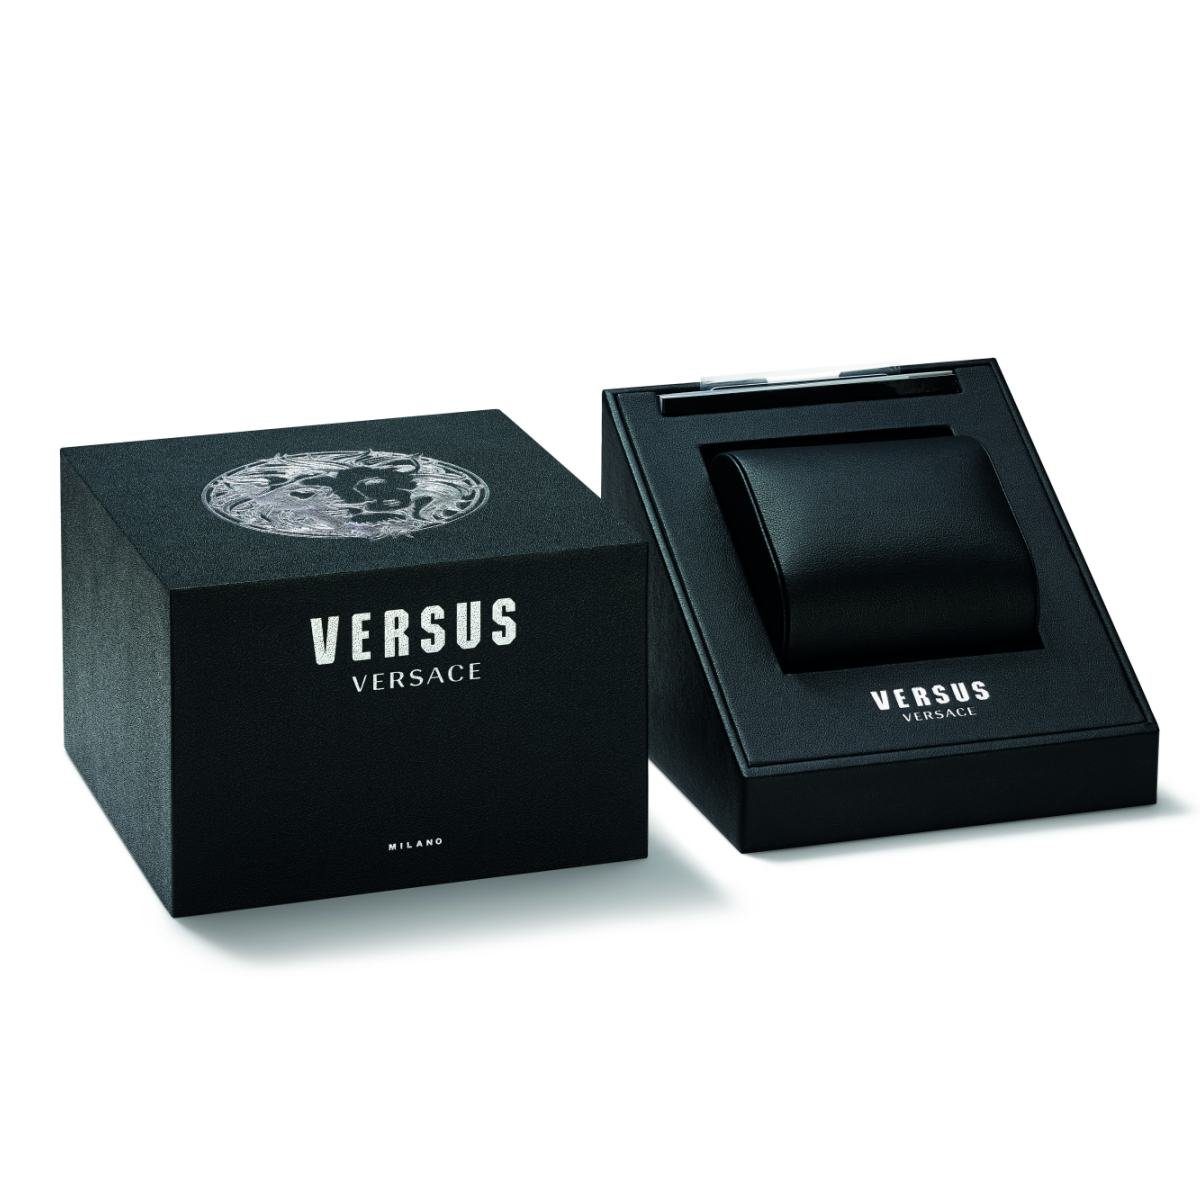 Versus Versace VSP791518 Quarzuhr